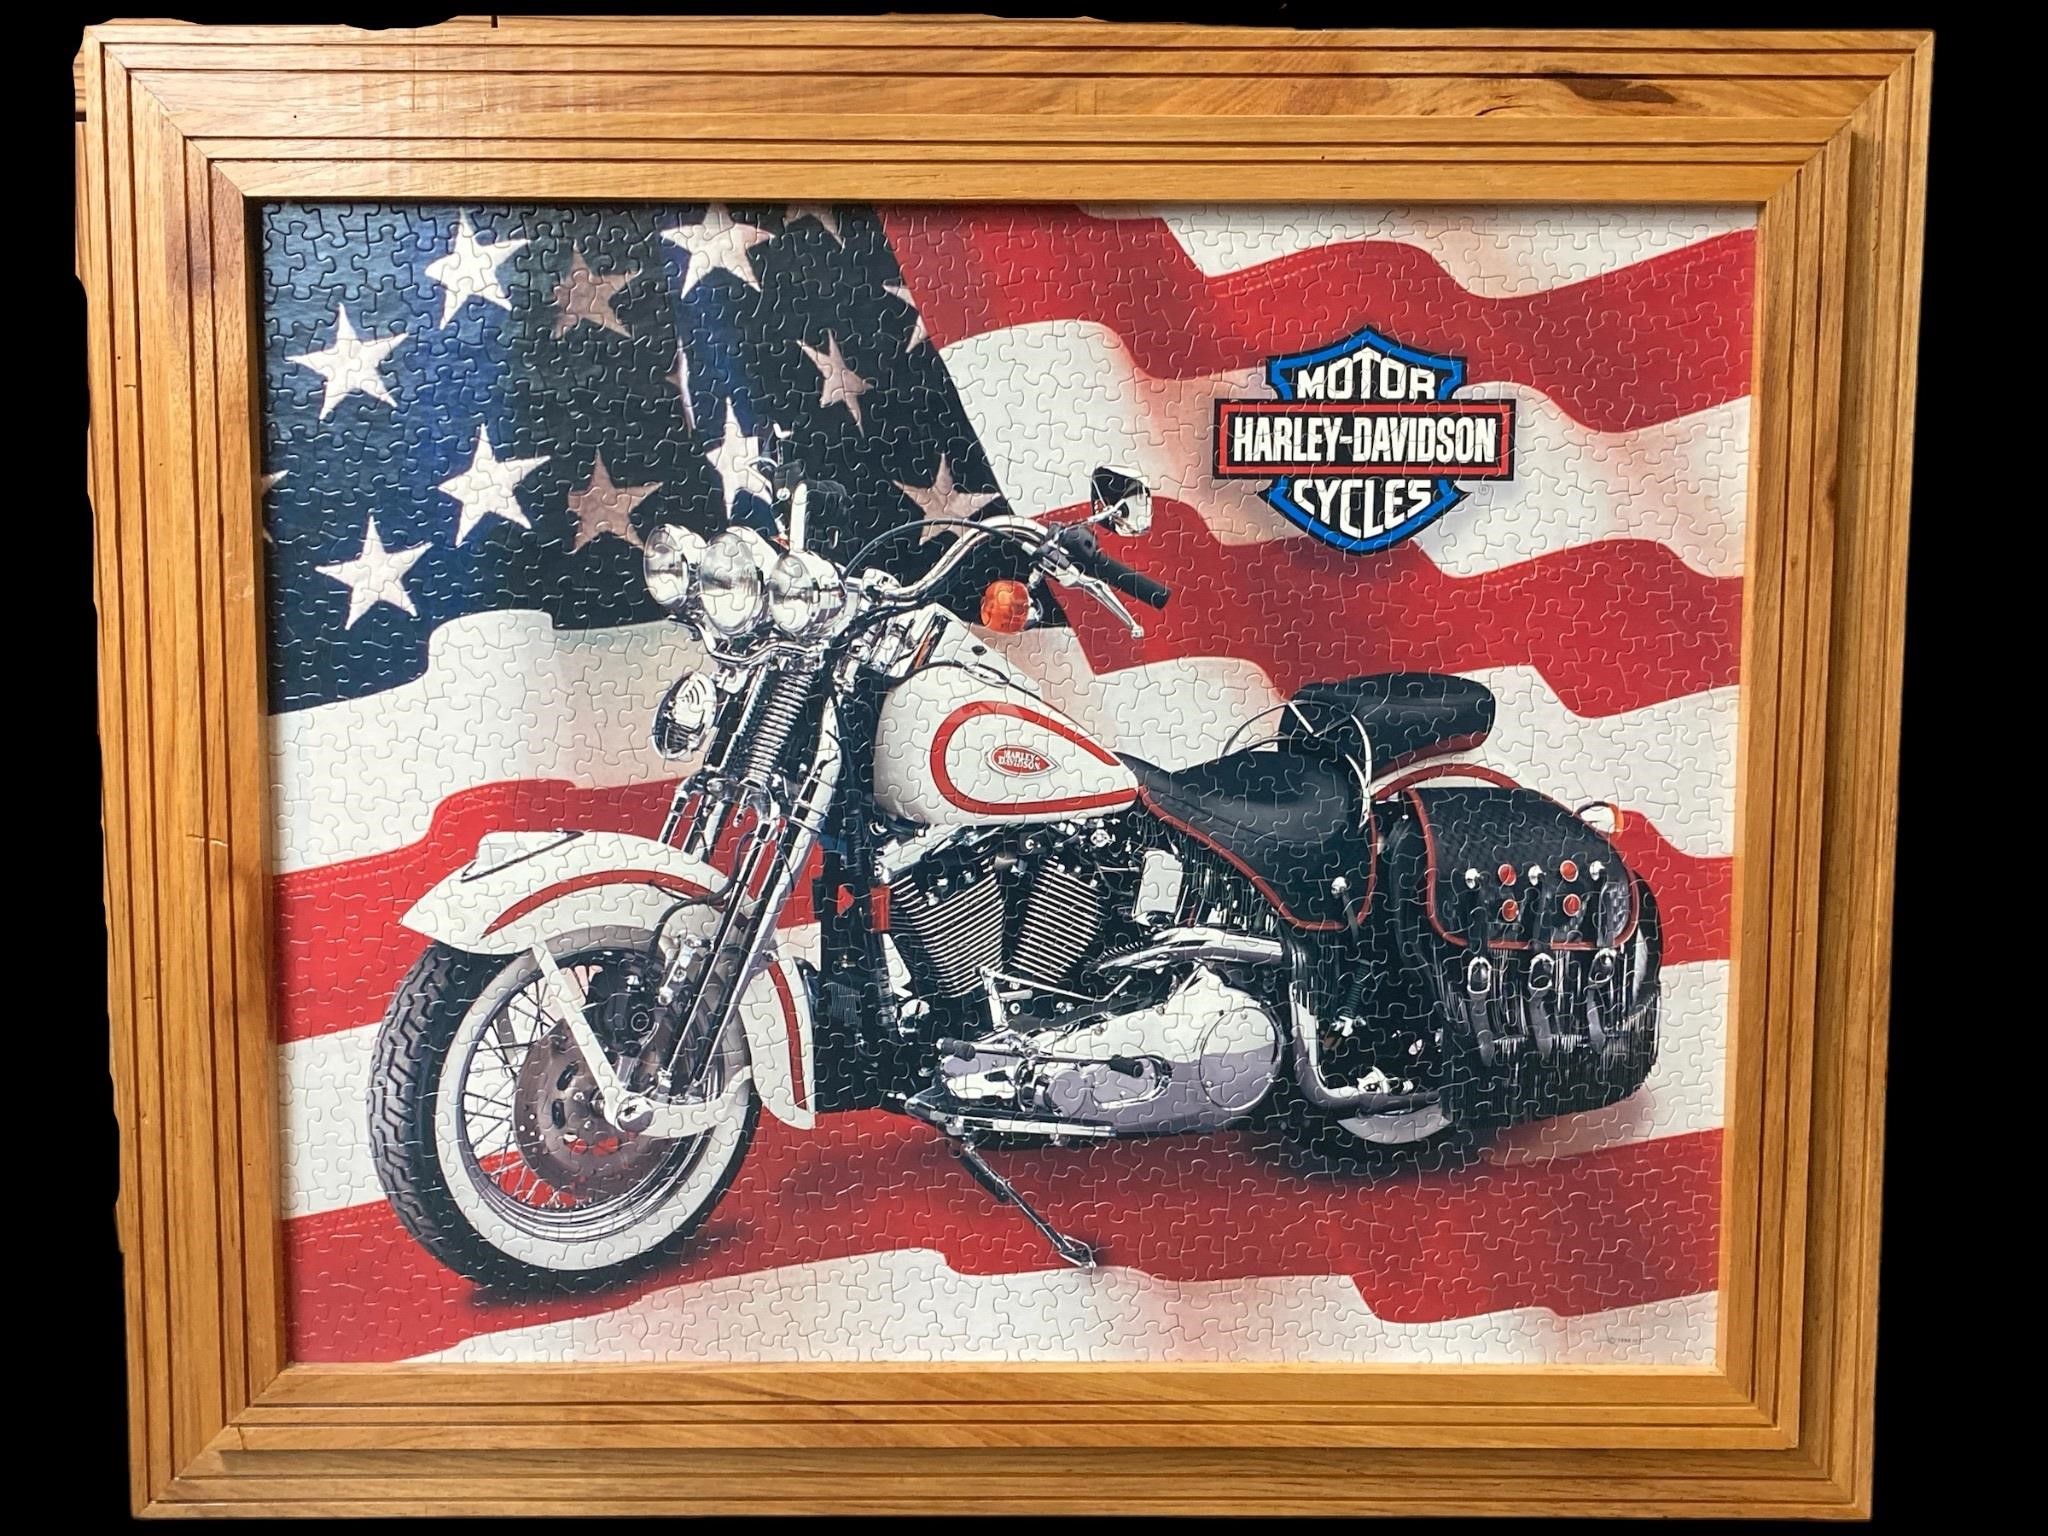 Framed 24x30” Harley Heritage Springer Puzzle Art